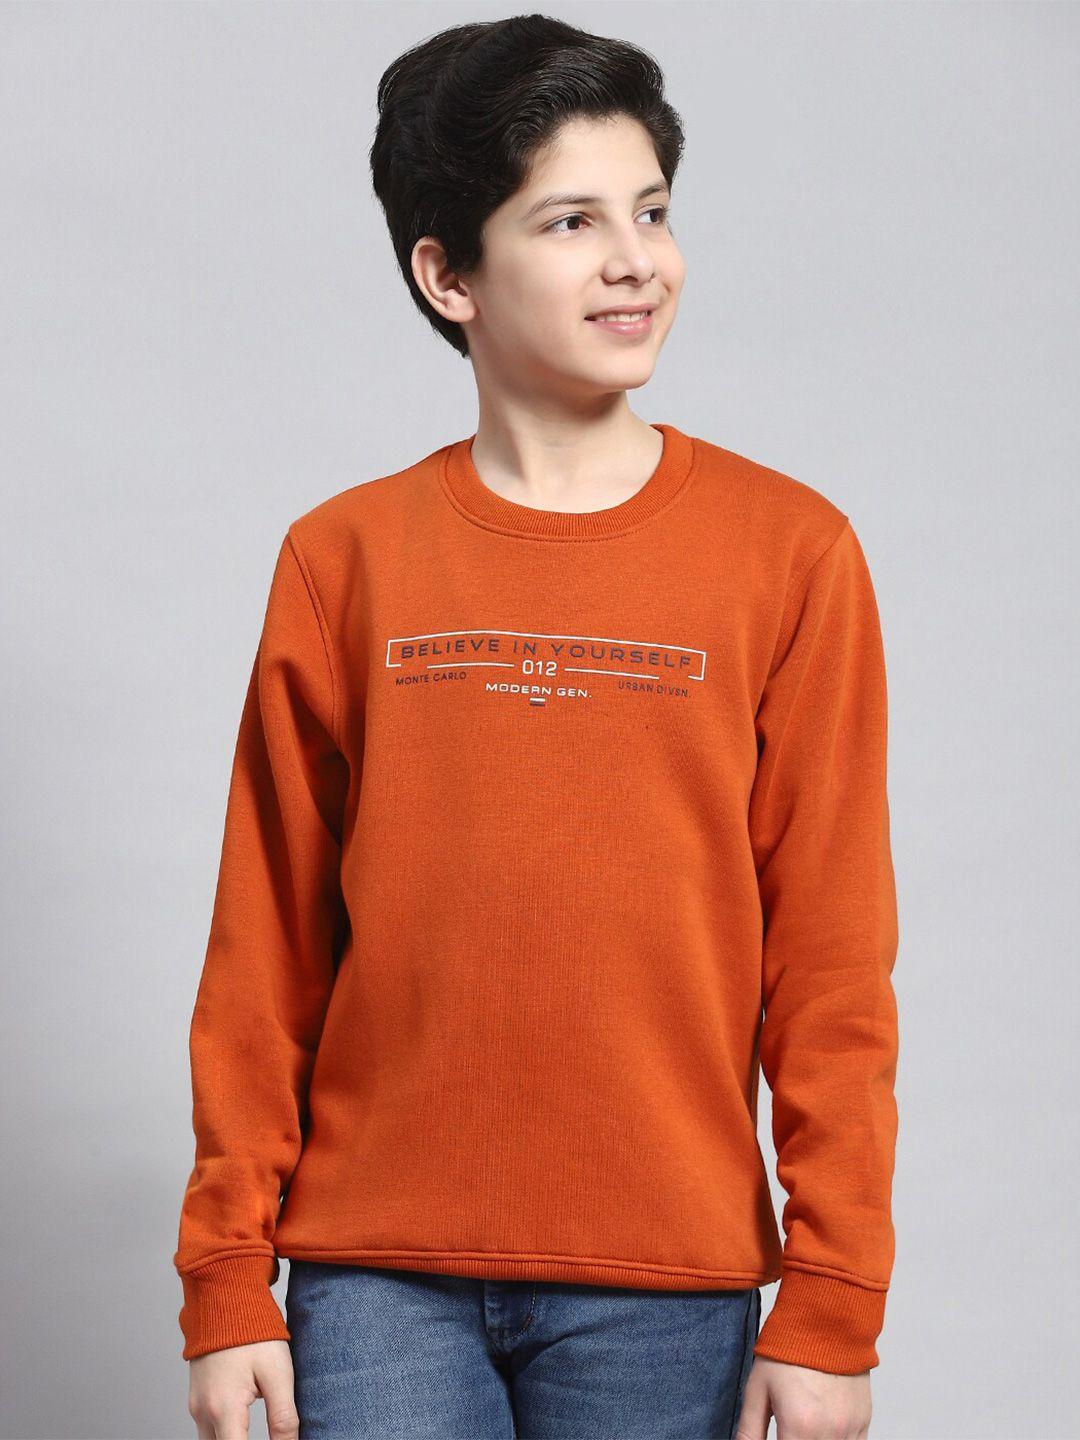 monte-carlo-boys-typography-printed-pullover-sweatshirt